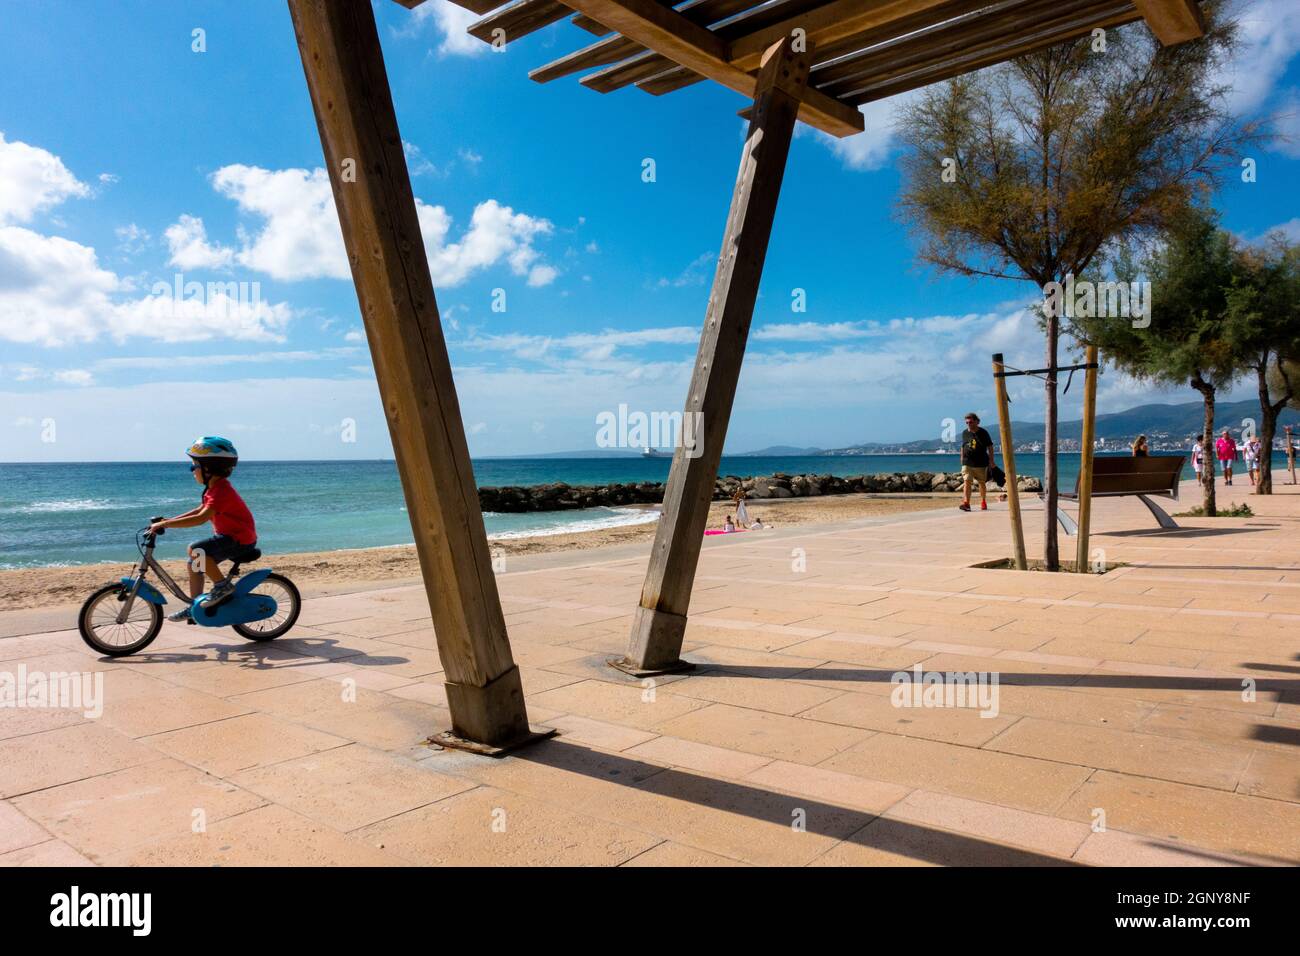 Ein Kind, das auf einem Radweg an der Strandpromenade Paseo Maritimo El Molinar, Palma de Mallorca Spanien fährt, pflasterte einen öffentlichen Spaziergang entlang des Kleinkindes am Meer Stockfoto